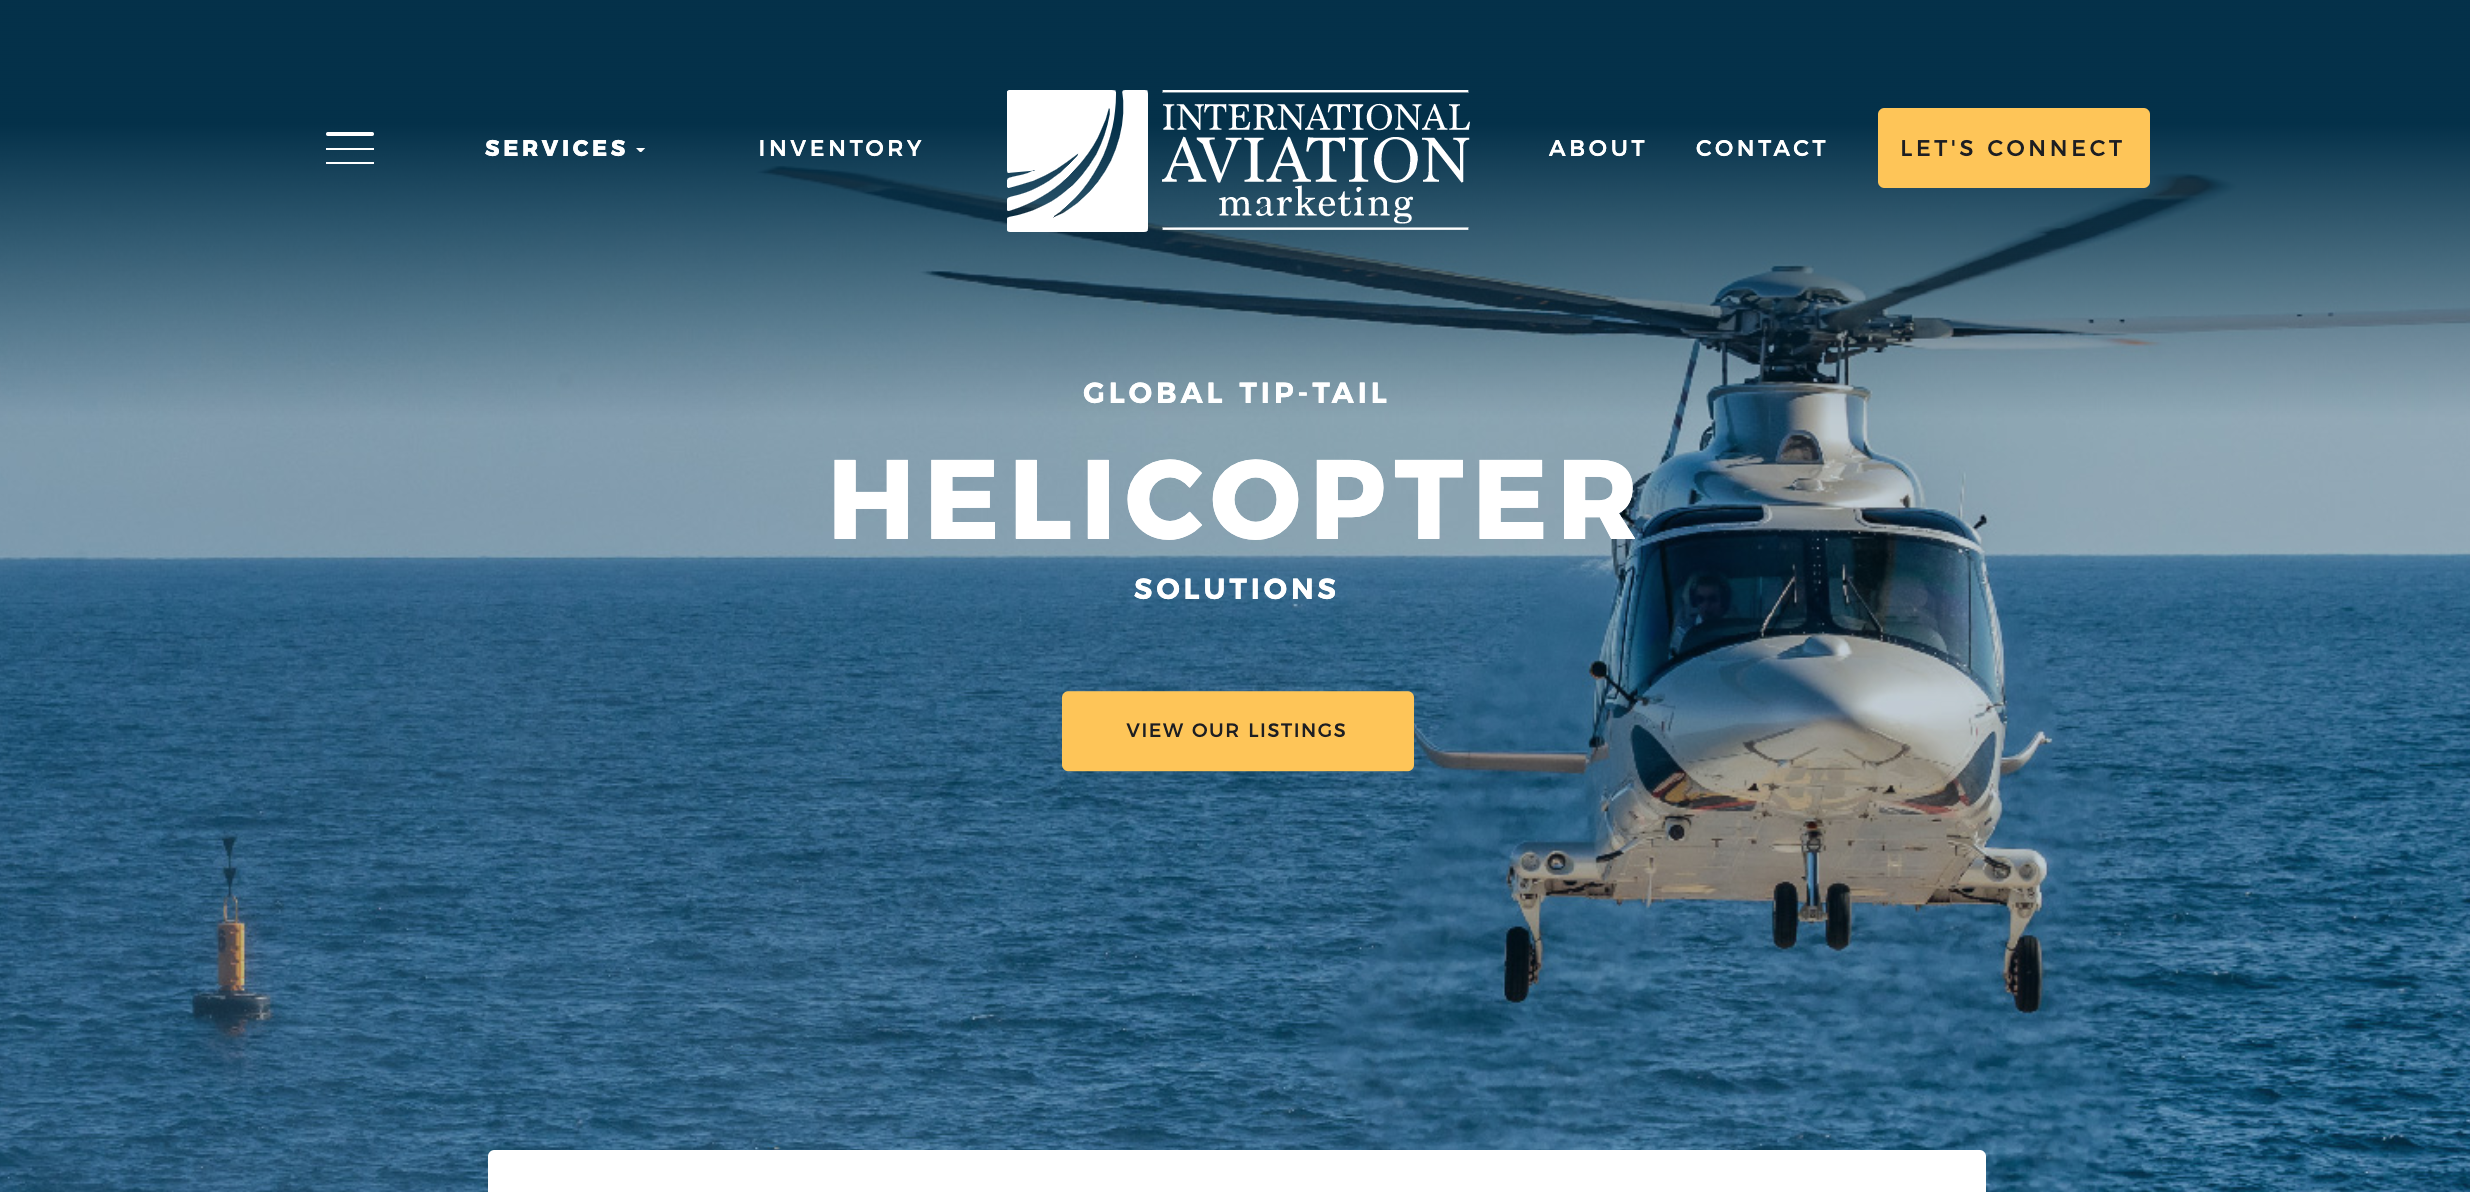 INTL AVIATION MKT - helicopter shop